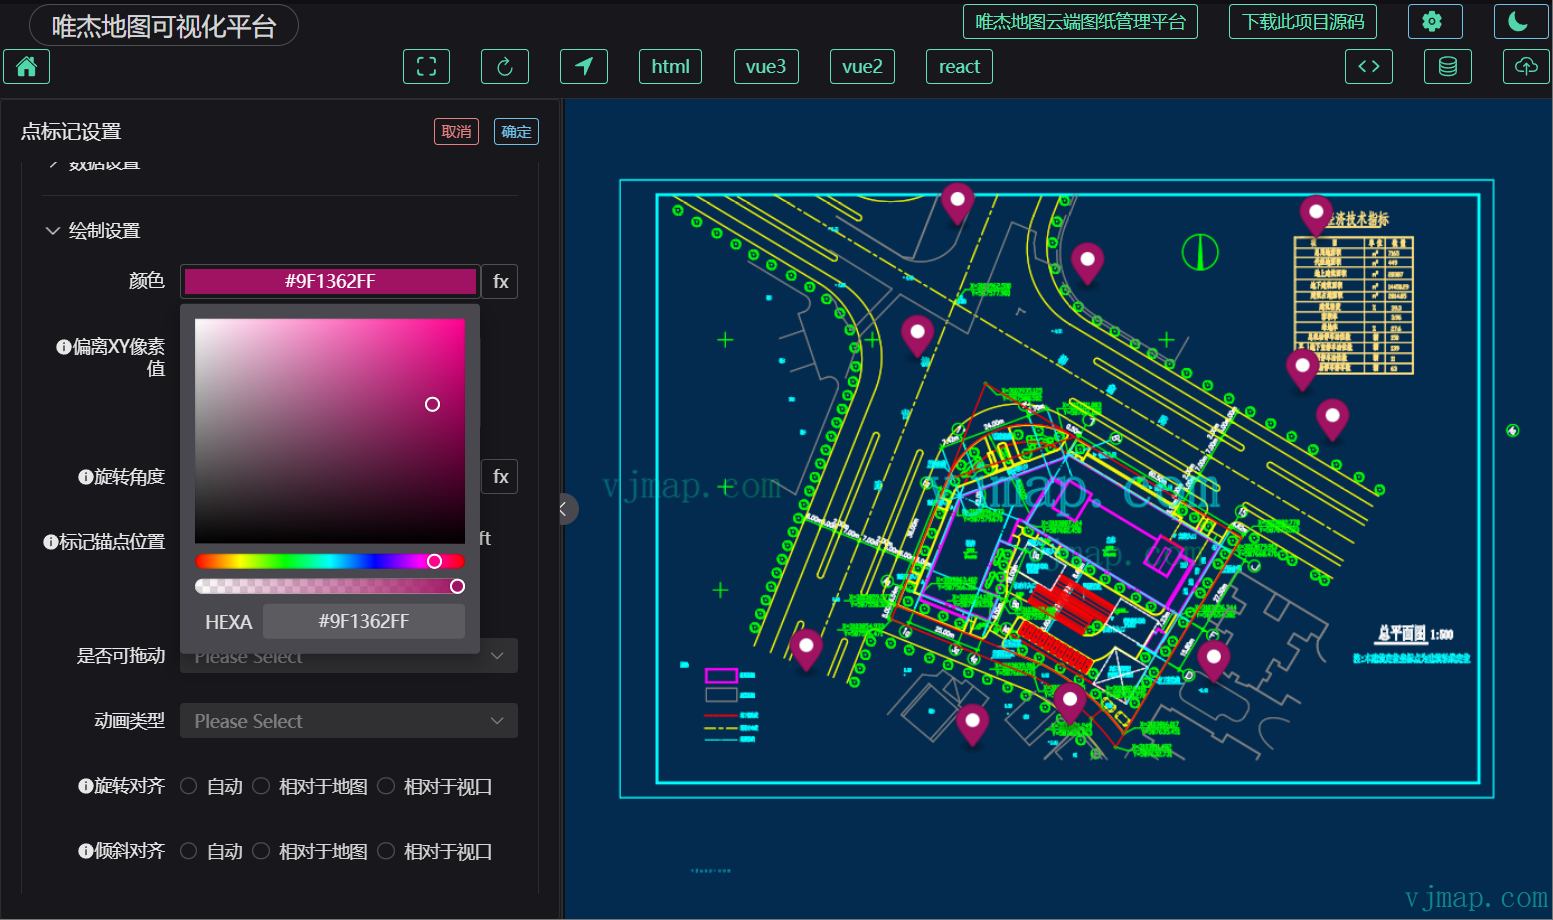 基于VUE3开发的CAD图可视化平台代码开源了